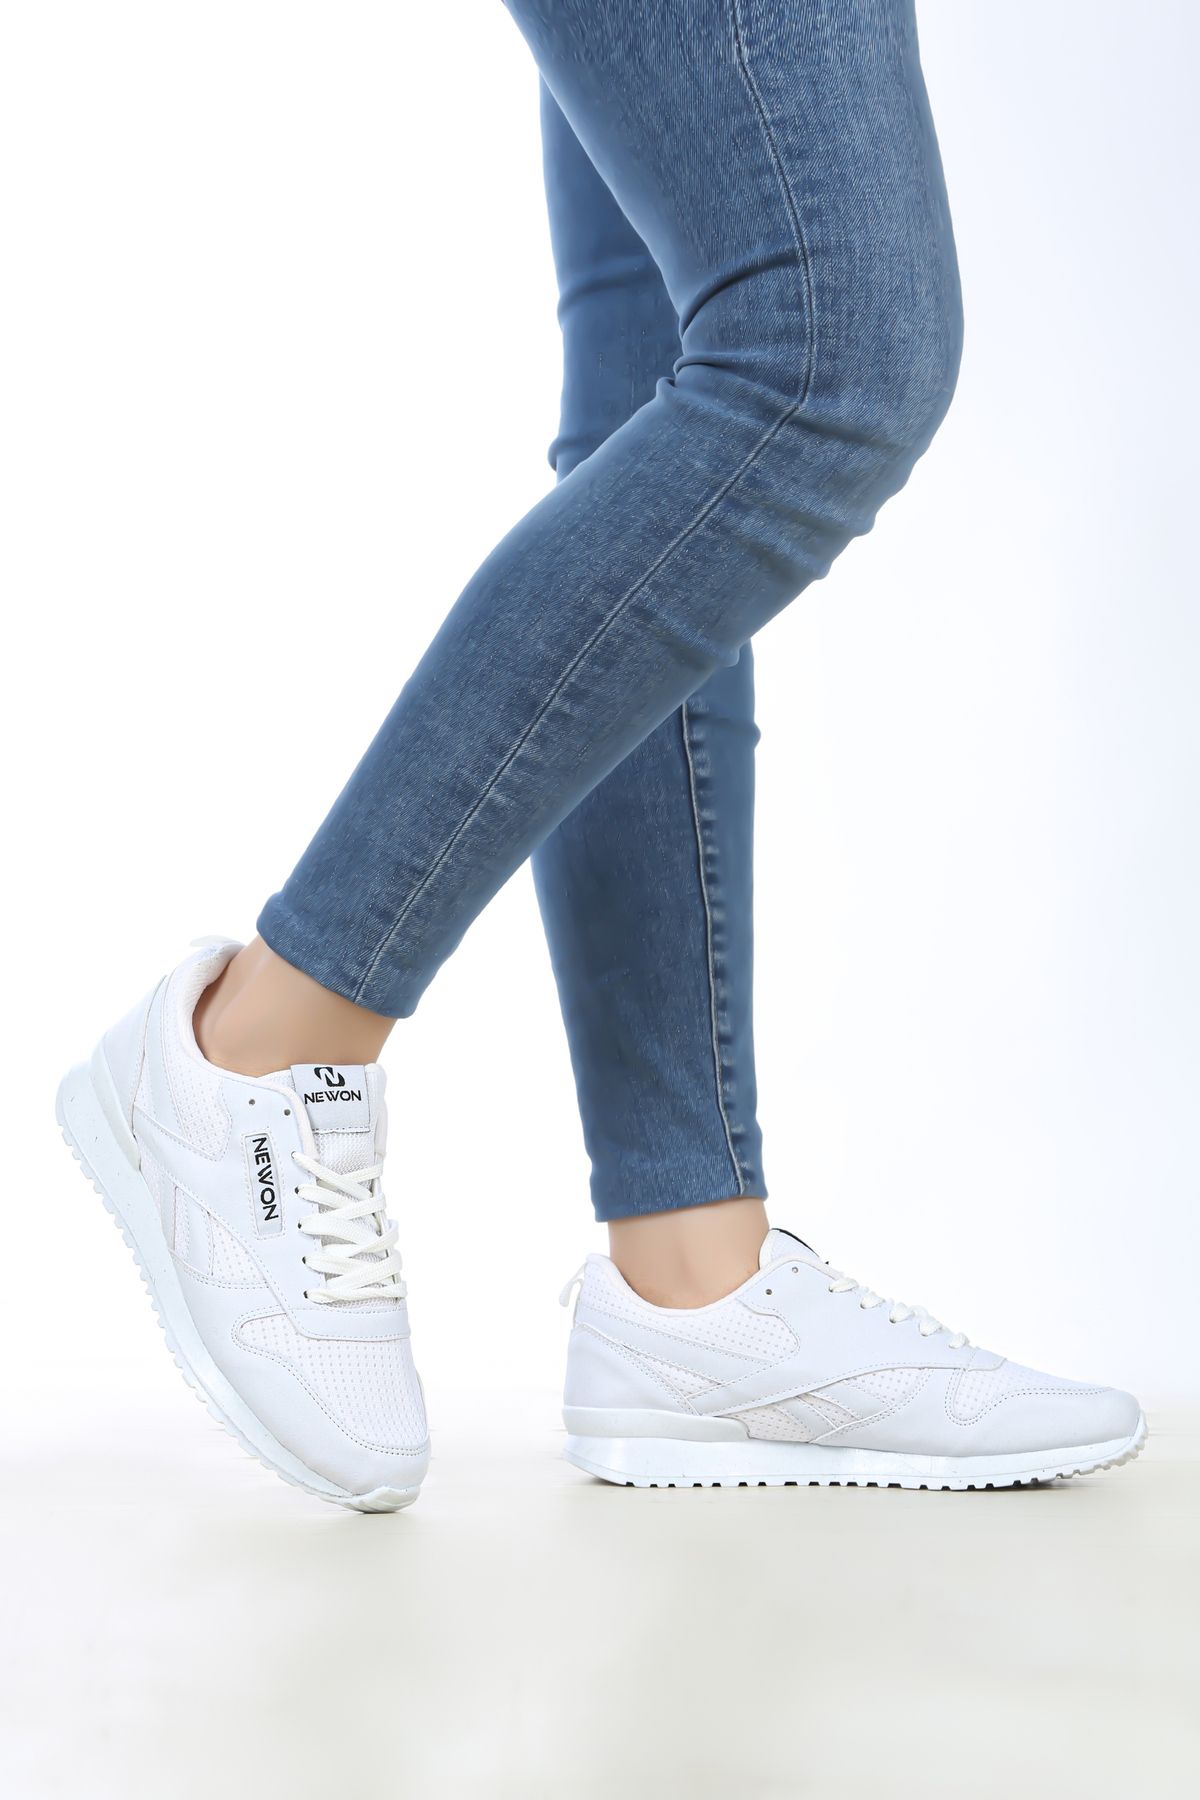 Newon Unisex Bağcıklı Günlük Rahat Taban Şık Tasarım Yürüyüş Casual Sneaker Spor Ayakkabı